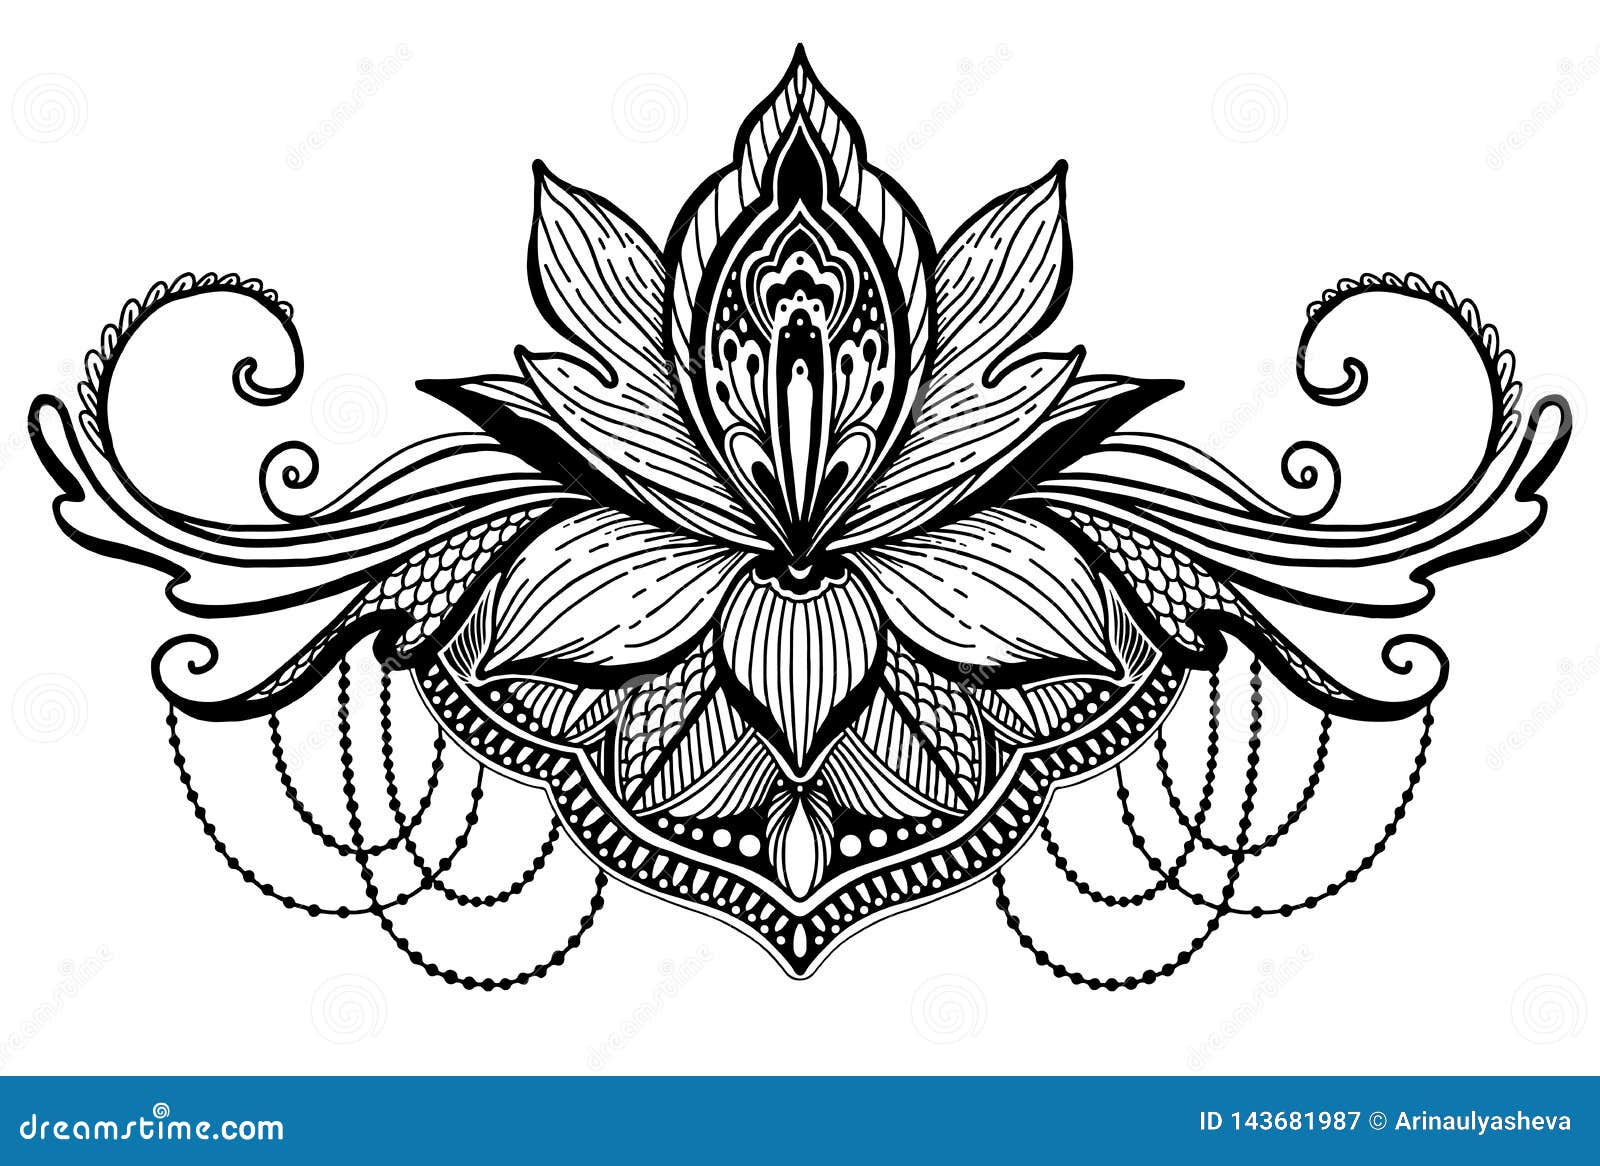 Symbole Ethnique De Fleur De Lotus Couleur Noire à Larrière